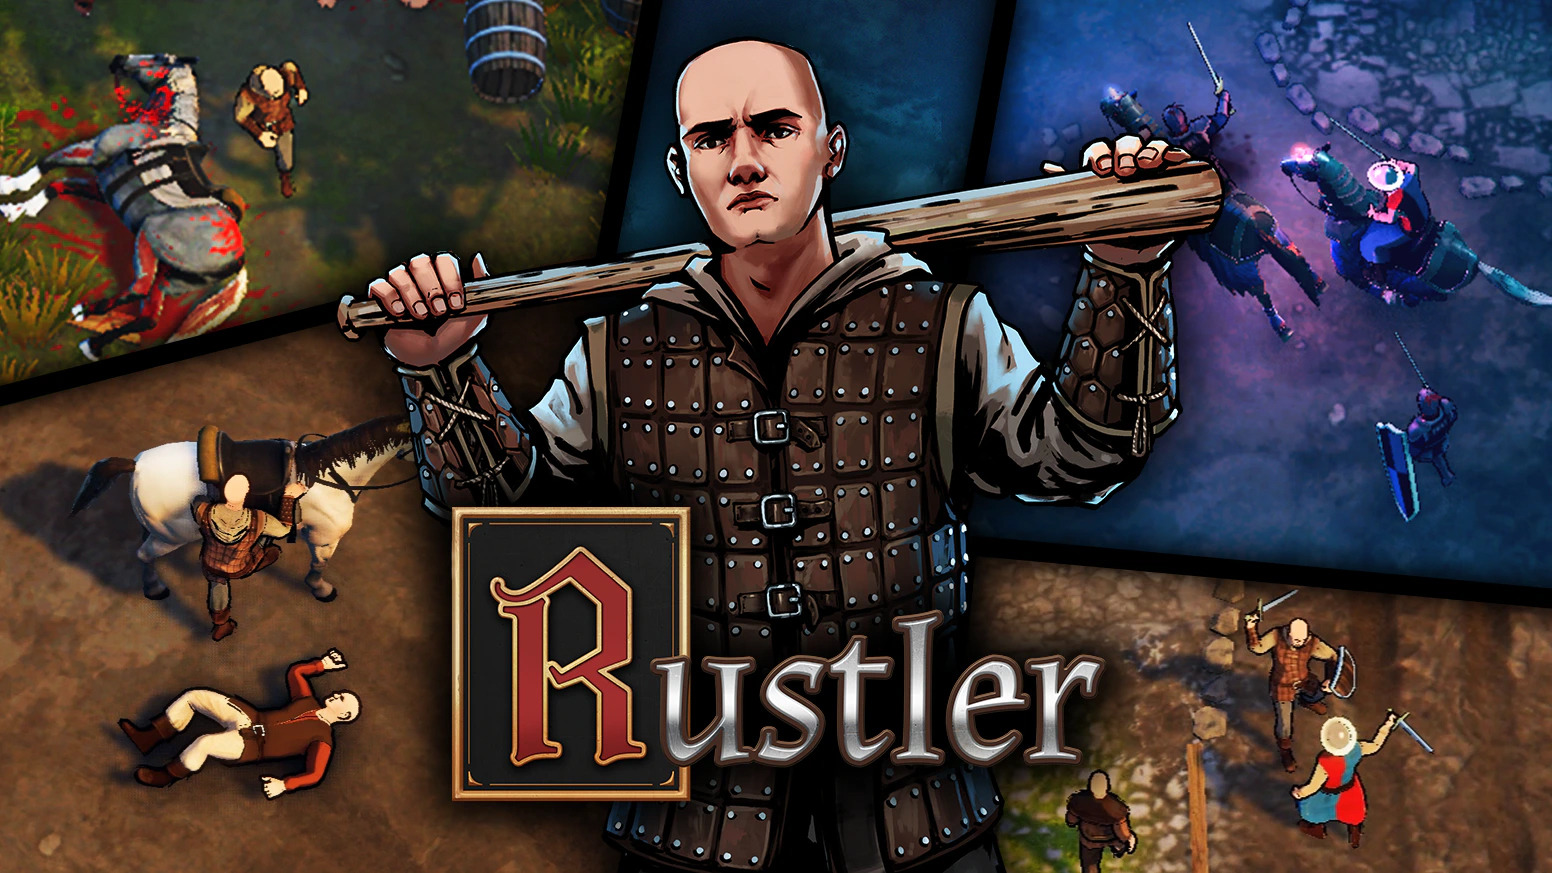 中世版 Gta なオープンワールドact Rustler Steam早期アクセス開始時期が決定 Game Spark 国内 海外ゲーム情報サイト